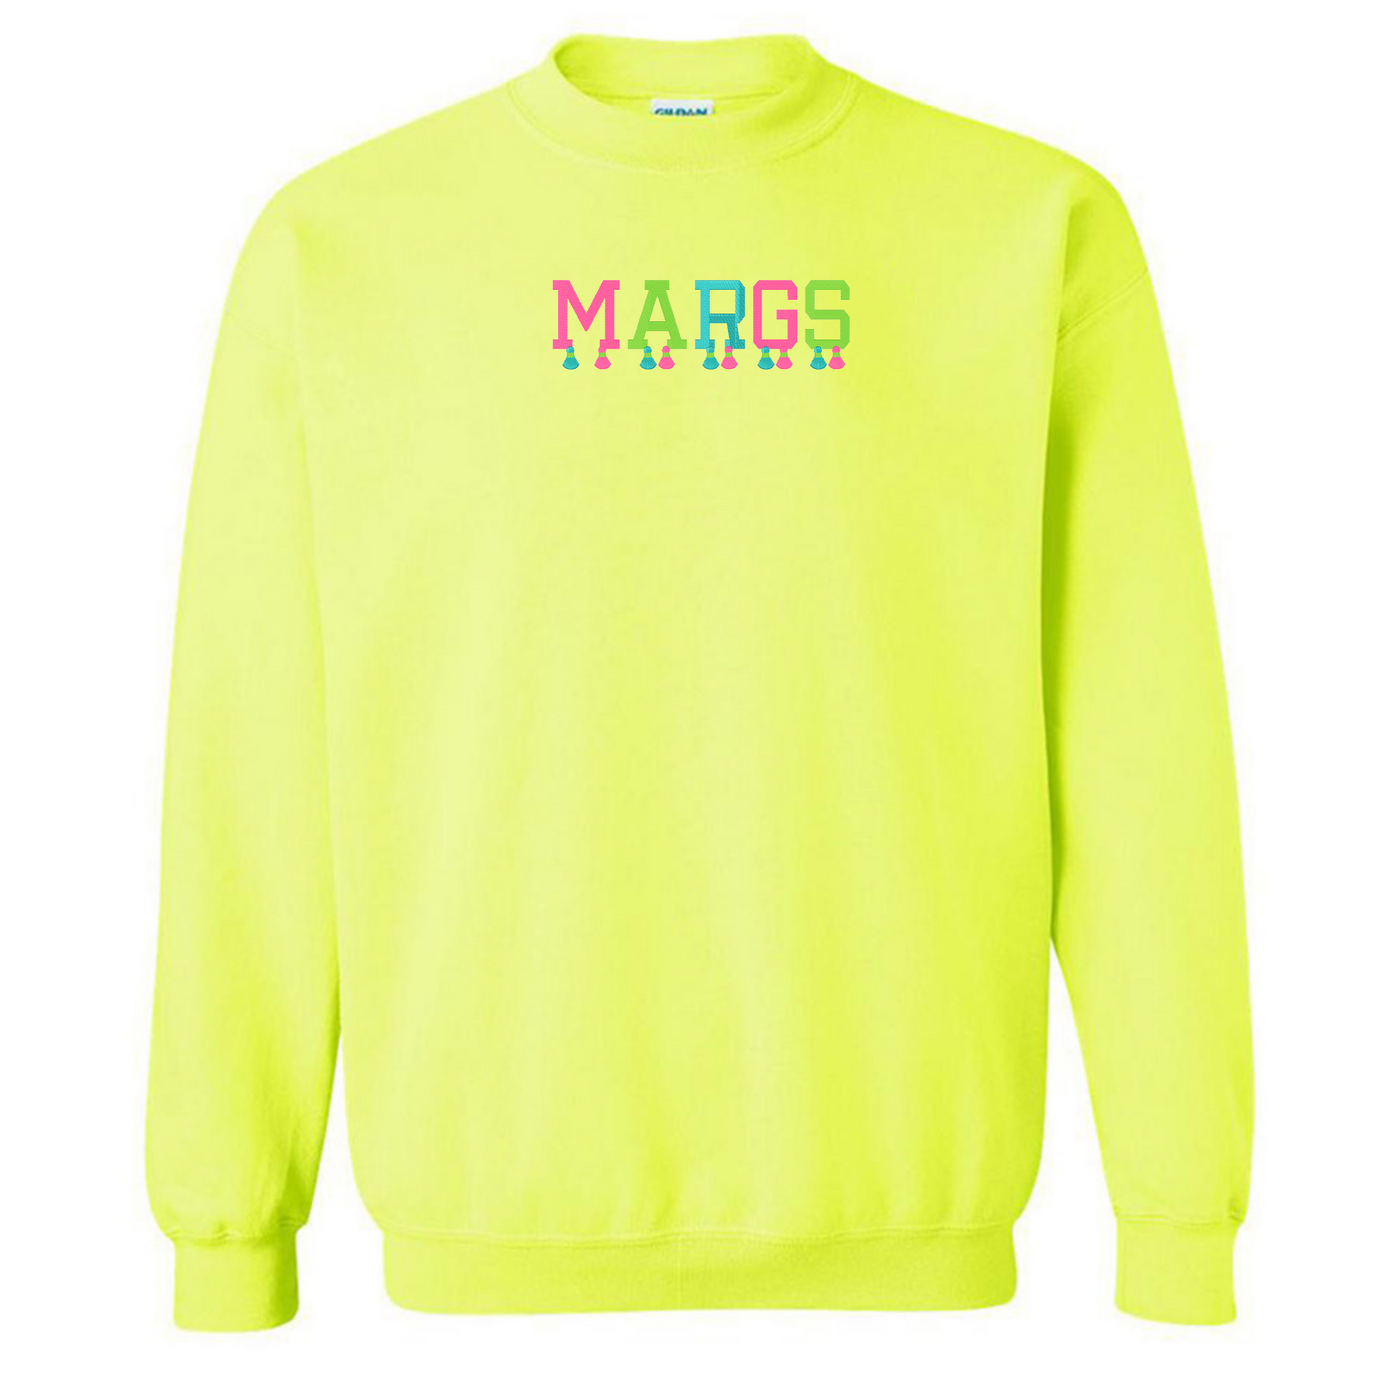 Embroidered Tasseled 'Margs' Sweatshirt